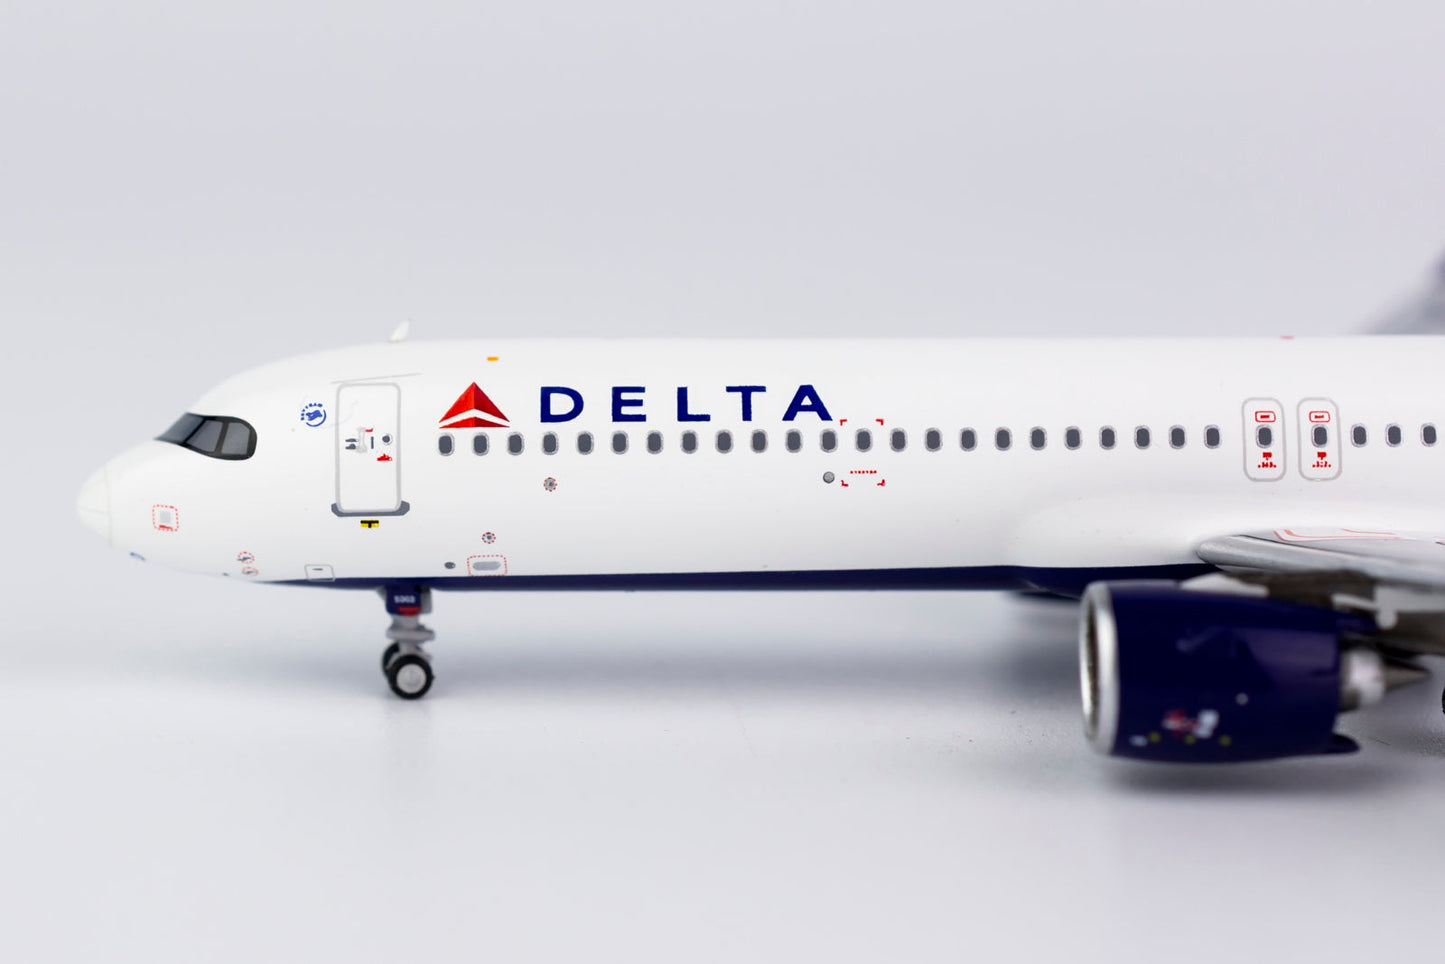 *1/400 Delta Airlines A321neo NG Models 13037s/d1 *Defective model*